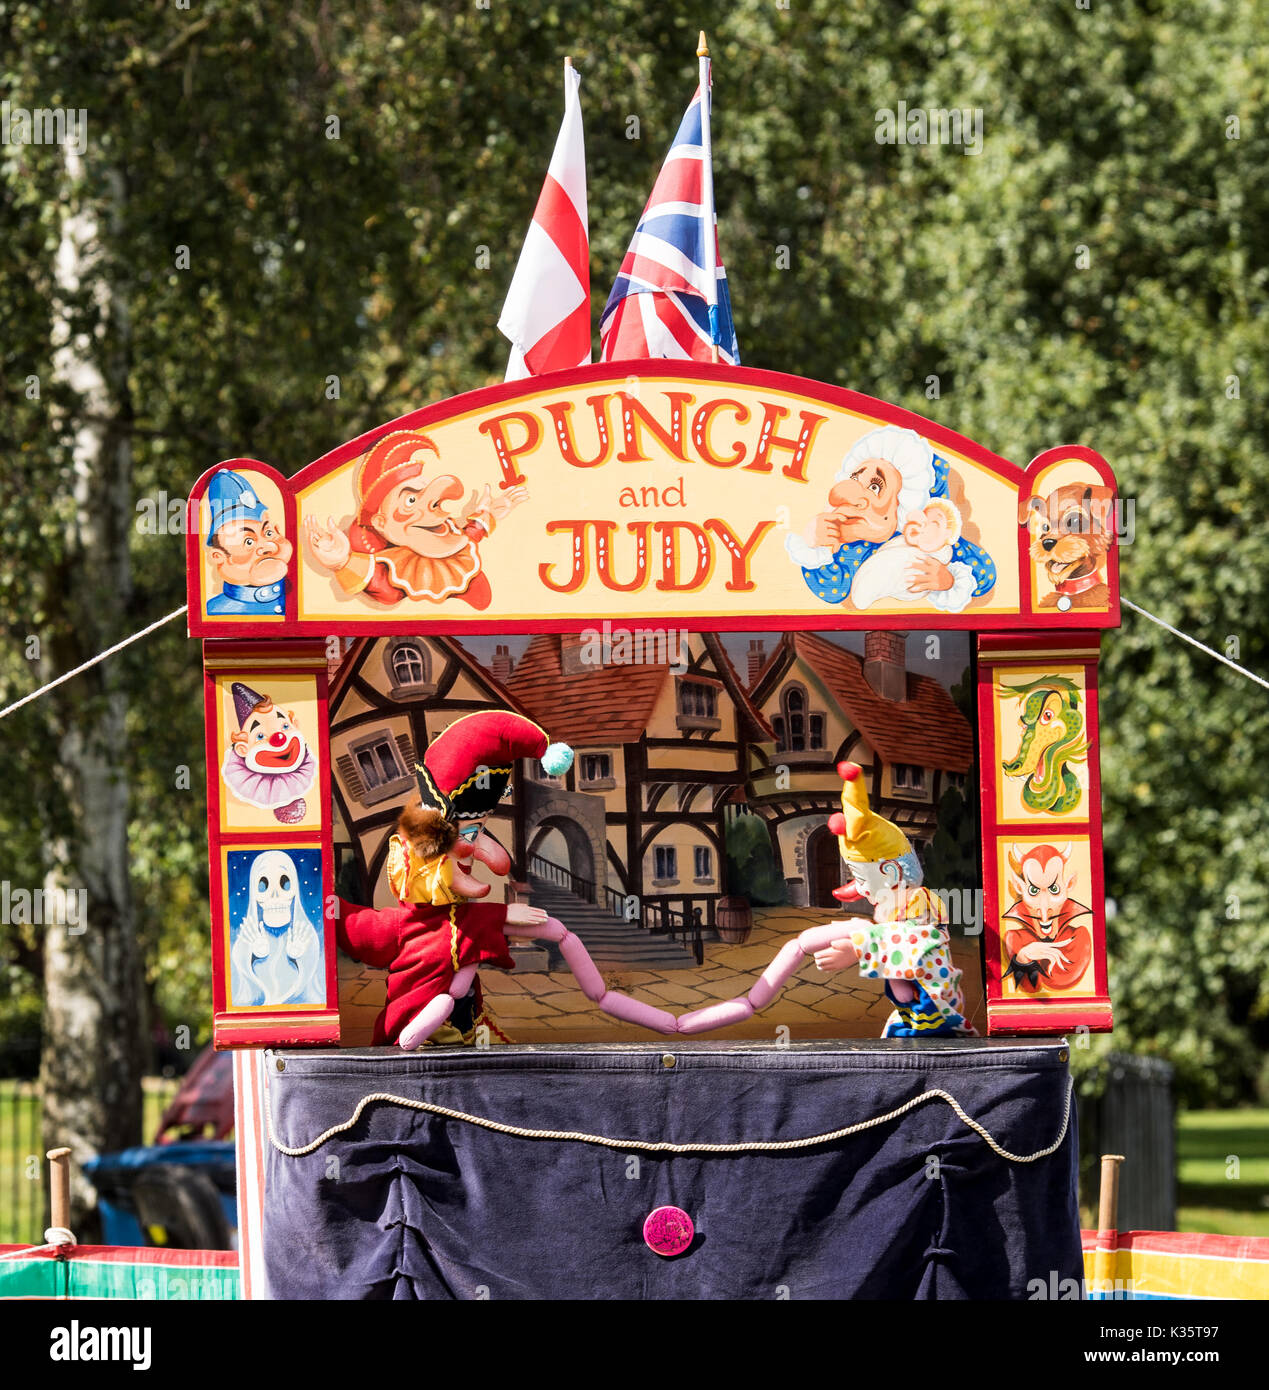 Un traditionnel Punch and Judy show par David Wilde dans un parc anglais à l'été à Brentwood, Essex avec les Mr Punch, clown et saucisses Banque D'Images